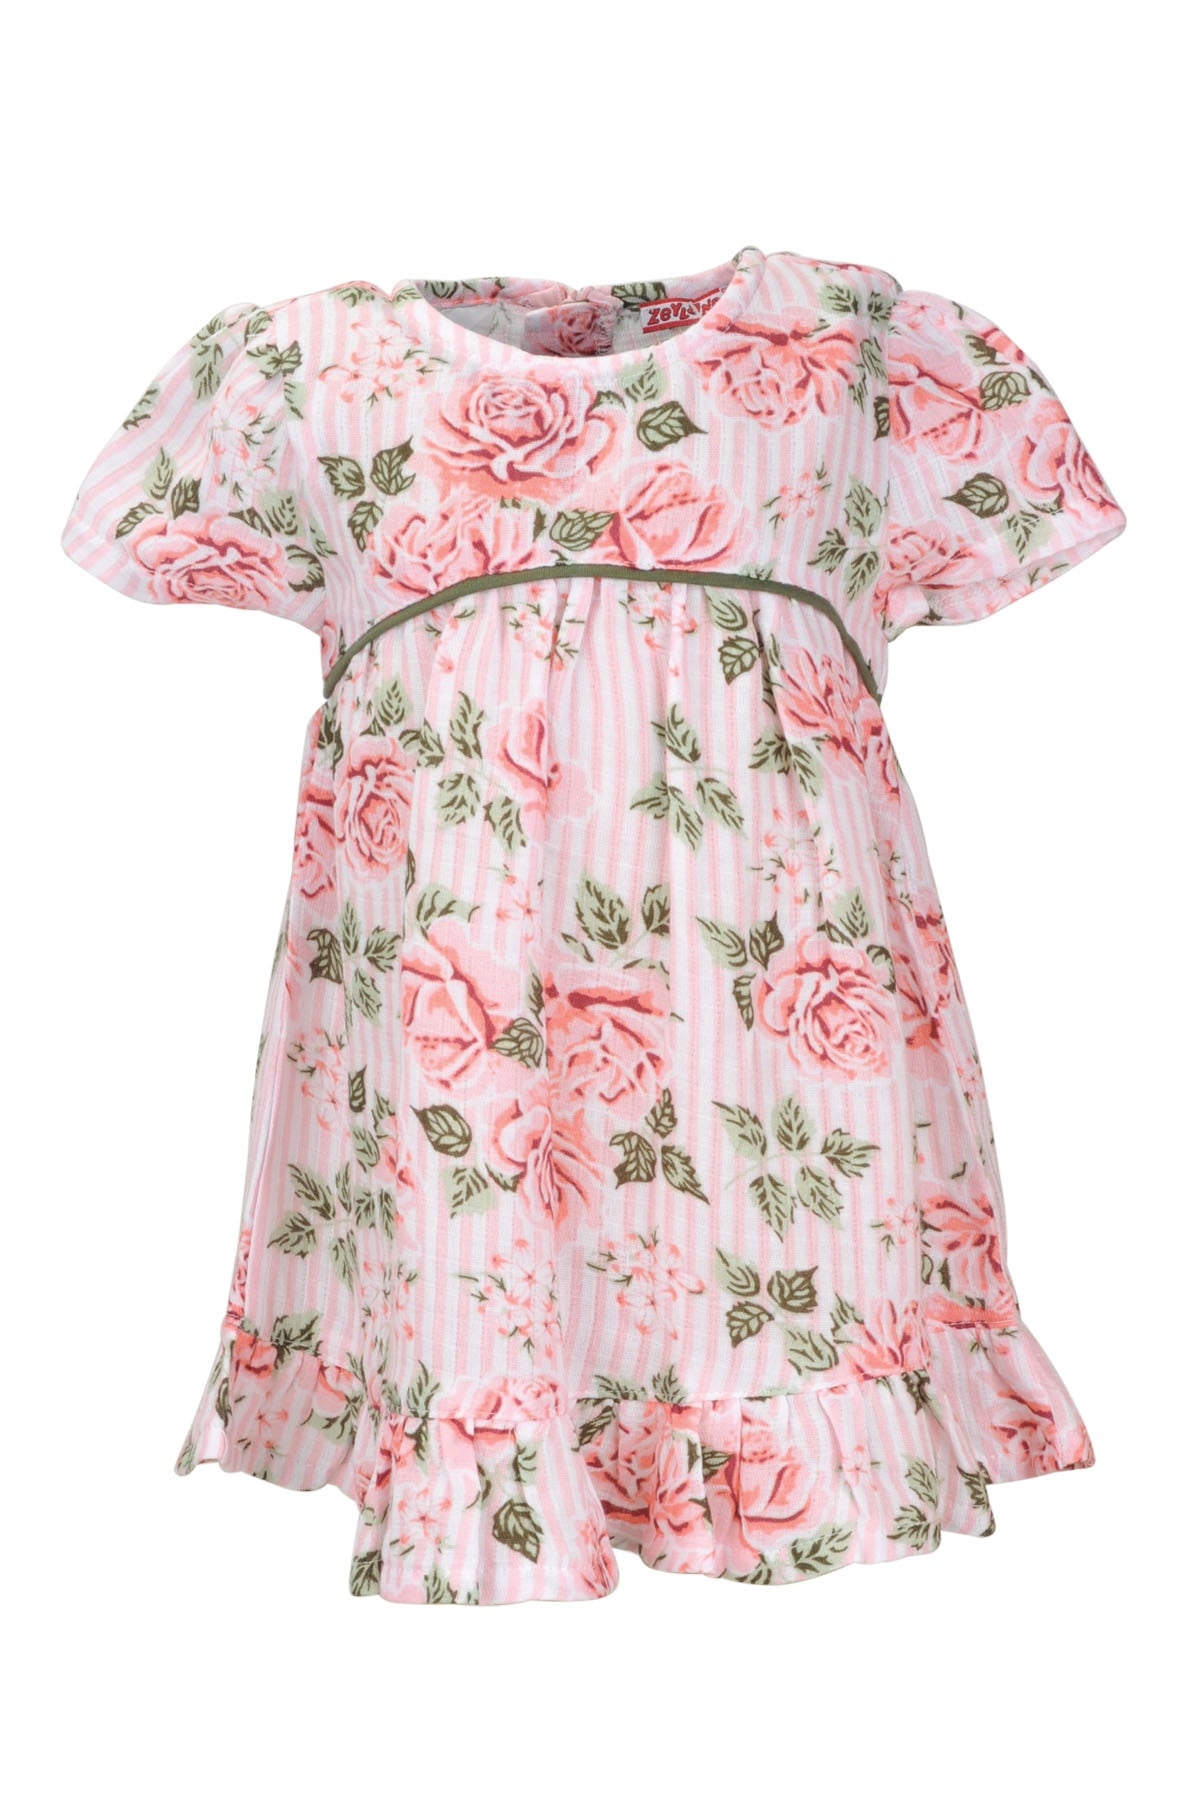 Kız Bebek Gül Roses Elbise (9ay-4yaş)-2